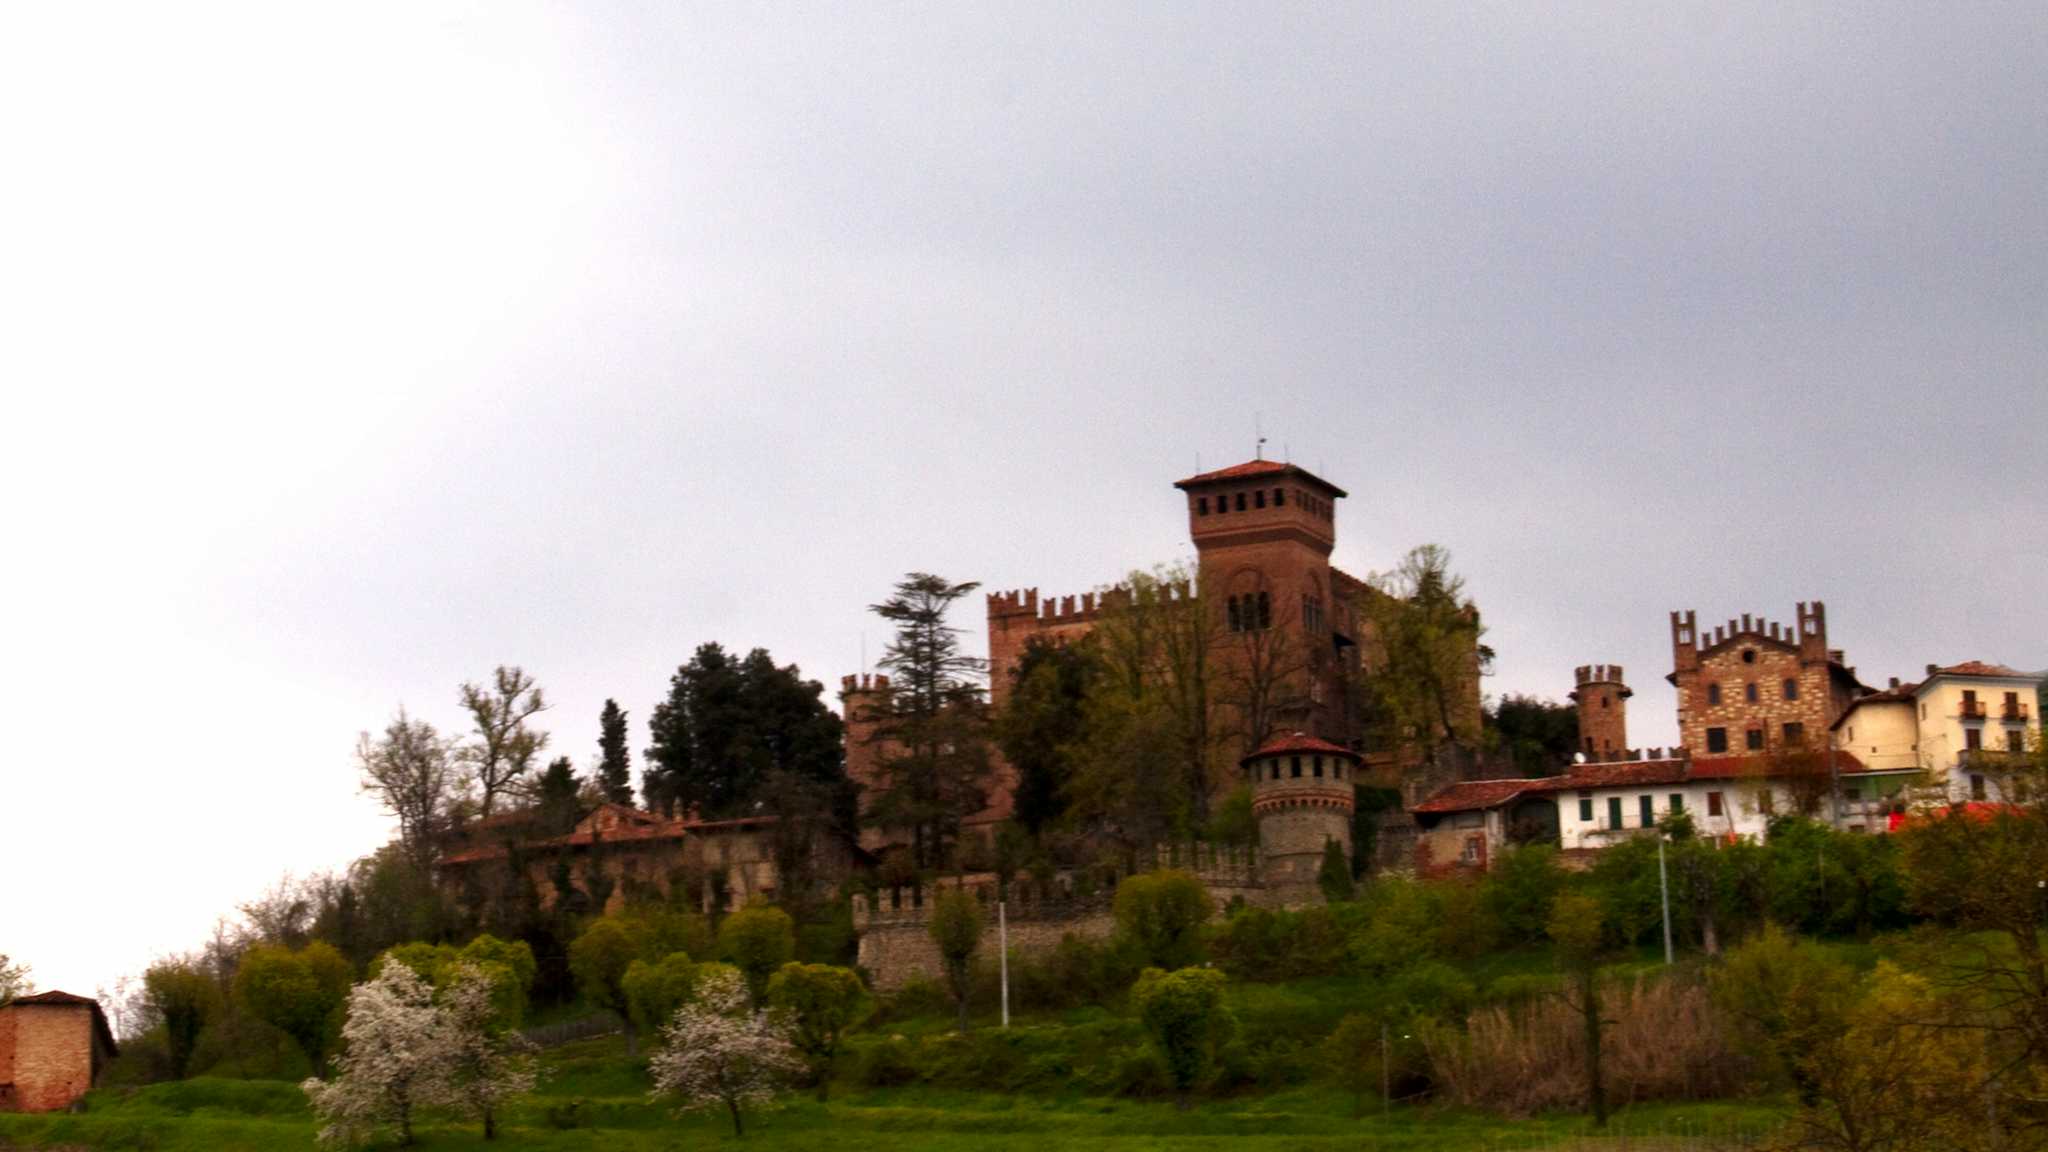 Camino Castle